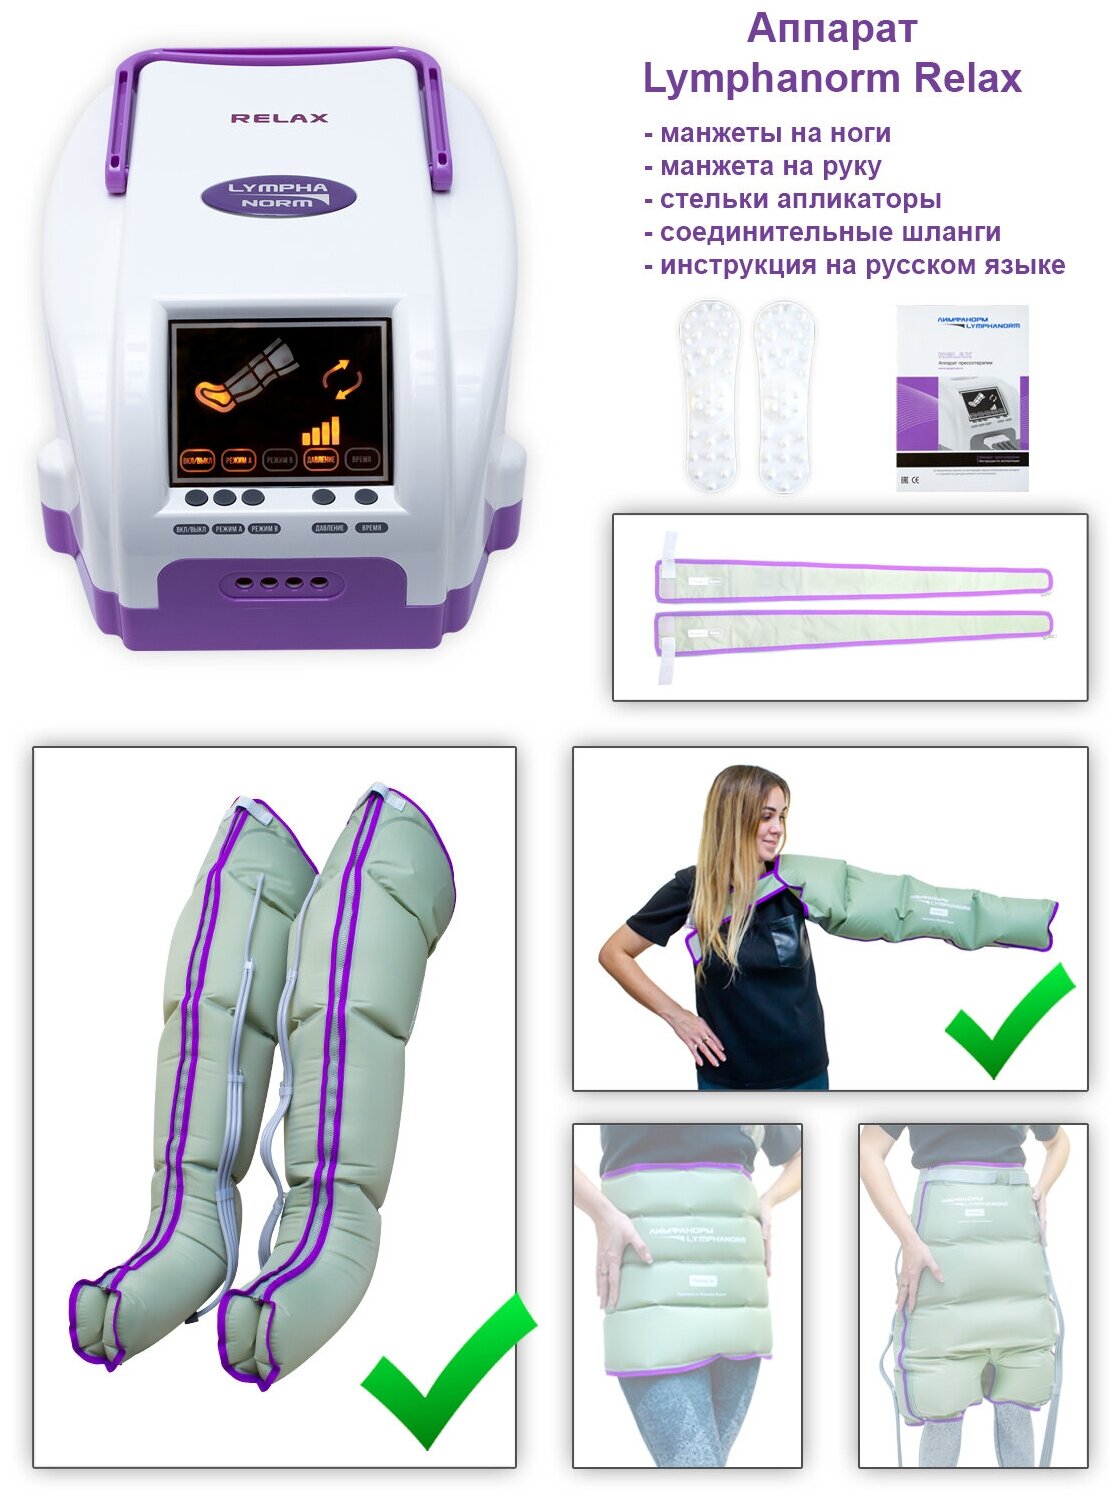 Аппарат для лимфодренажа и прессотерапии LymphaNorm RELAX в комплекте с манжетами для ног (размер XL) и манжетой на руку